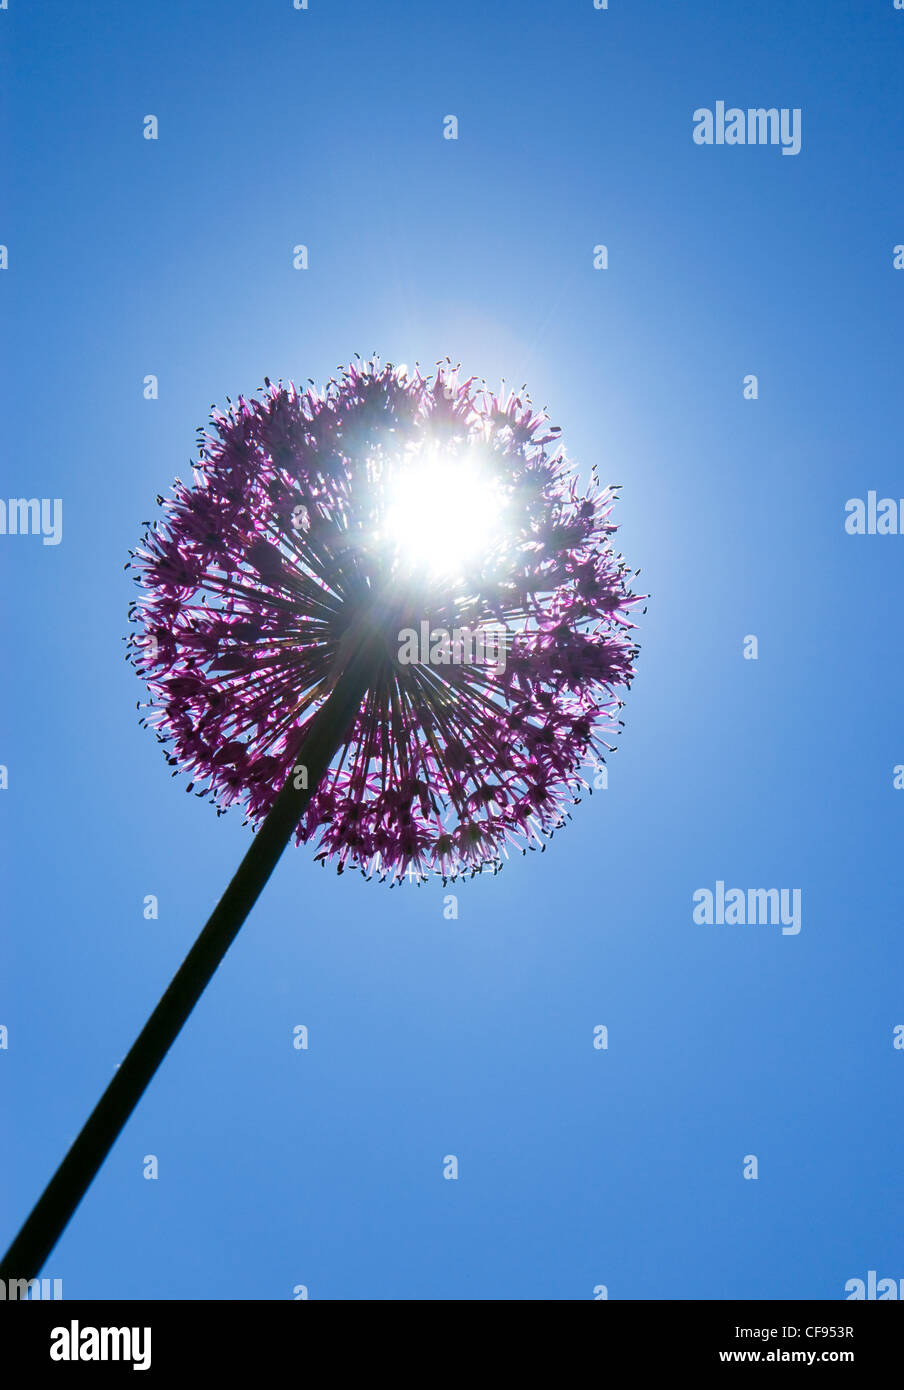 Allium viola sensazione fiore zen contro il sole Foto Stock